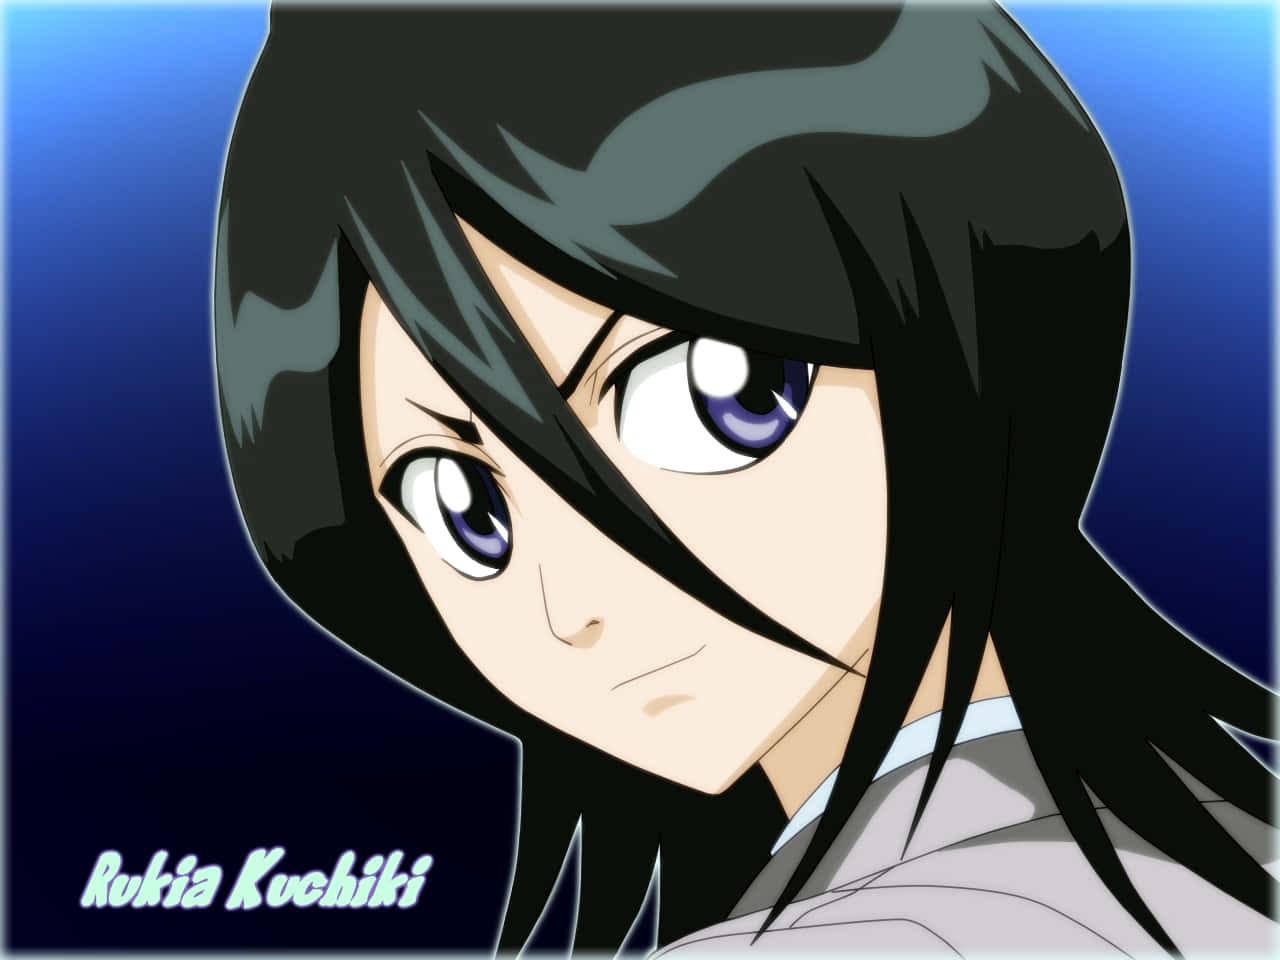 Rukia Kuchiki, character from popular anime series, Bleach Wallpaper